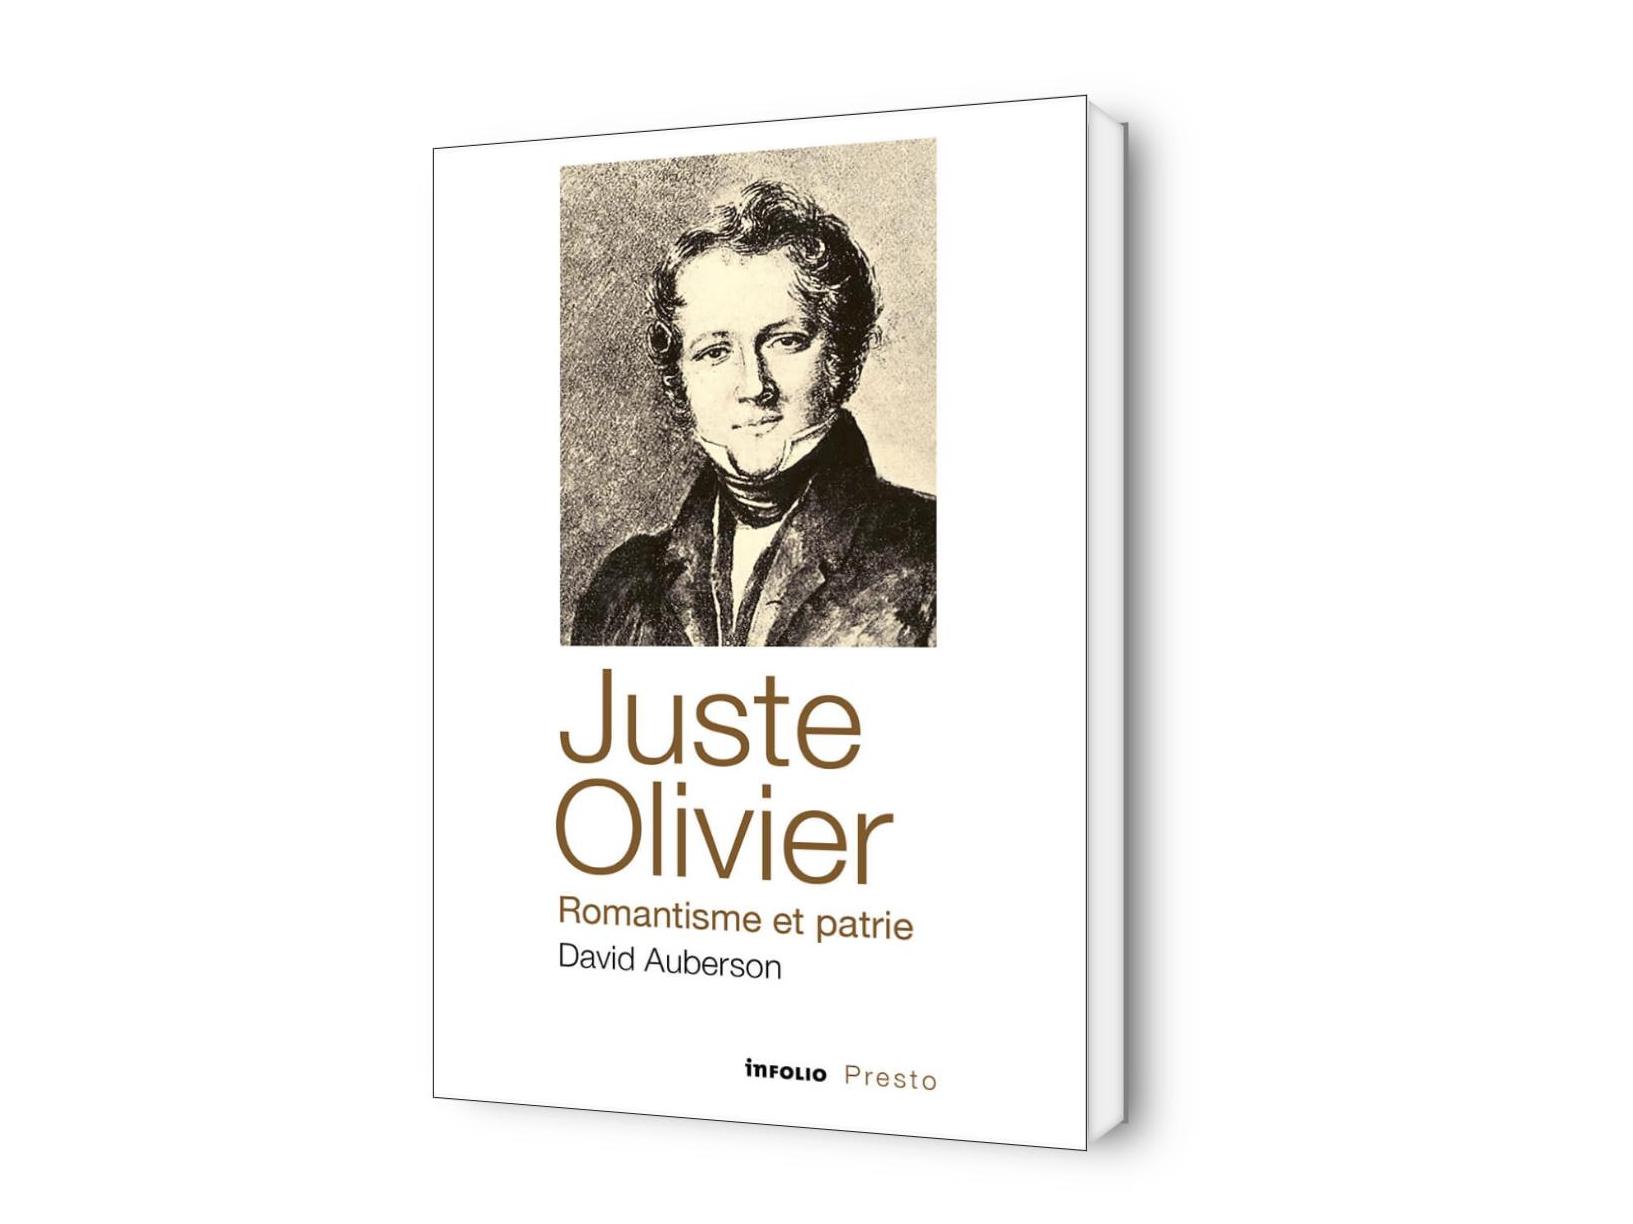 Juste Olivier, romantisme et patrie